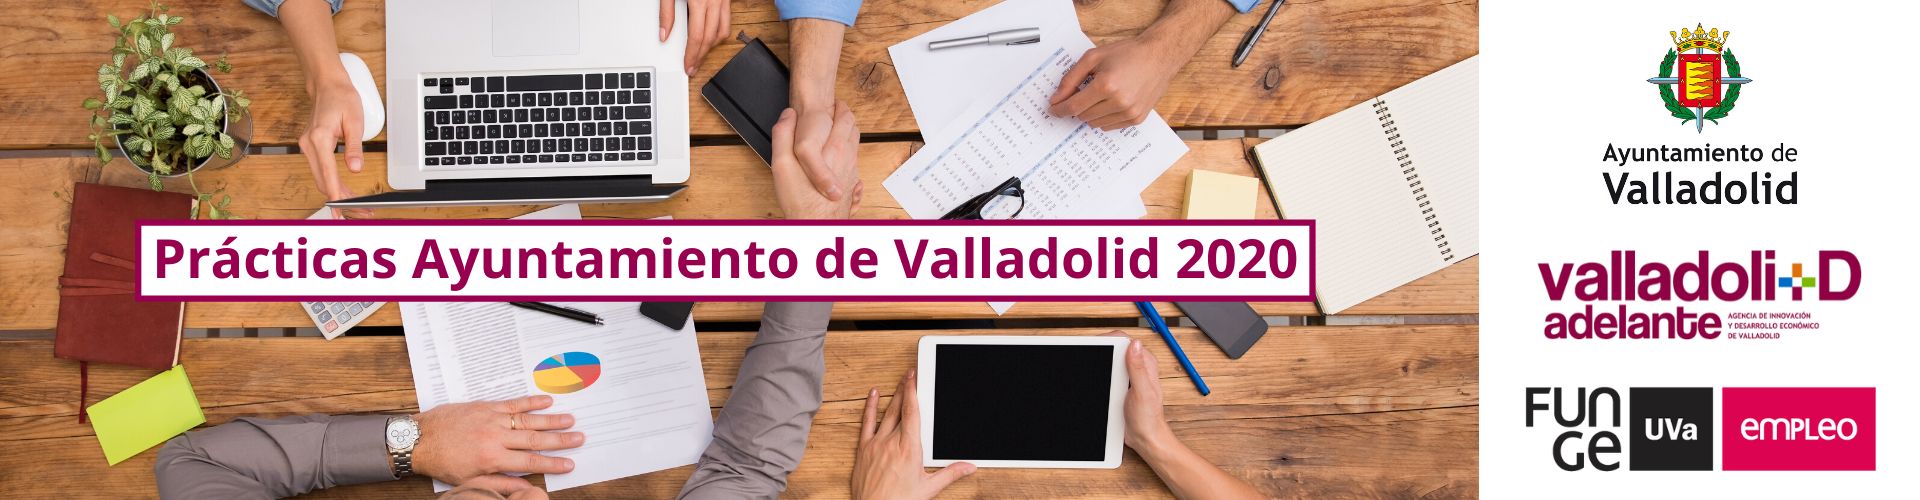 Programa de prácticas no laborales 2020 Funge UVa Ayuntamiento de Valladolid Valladolid Adelante1